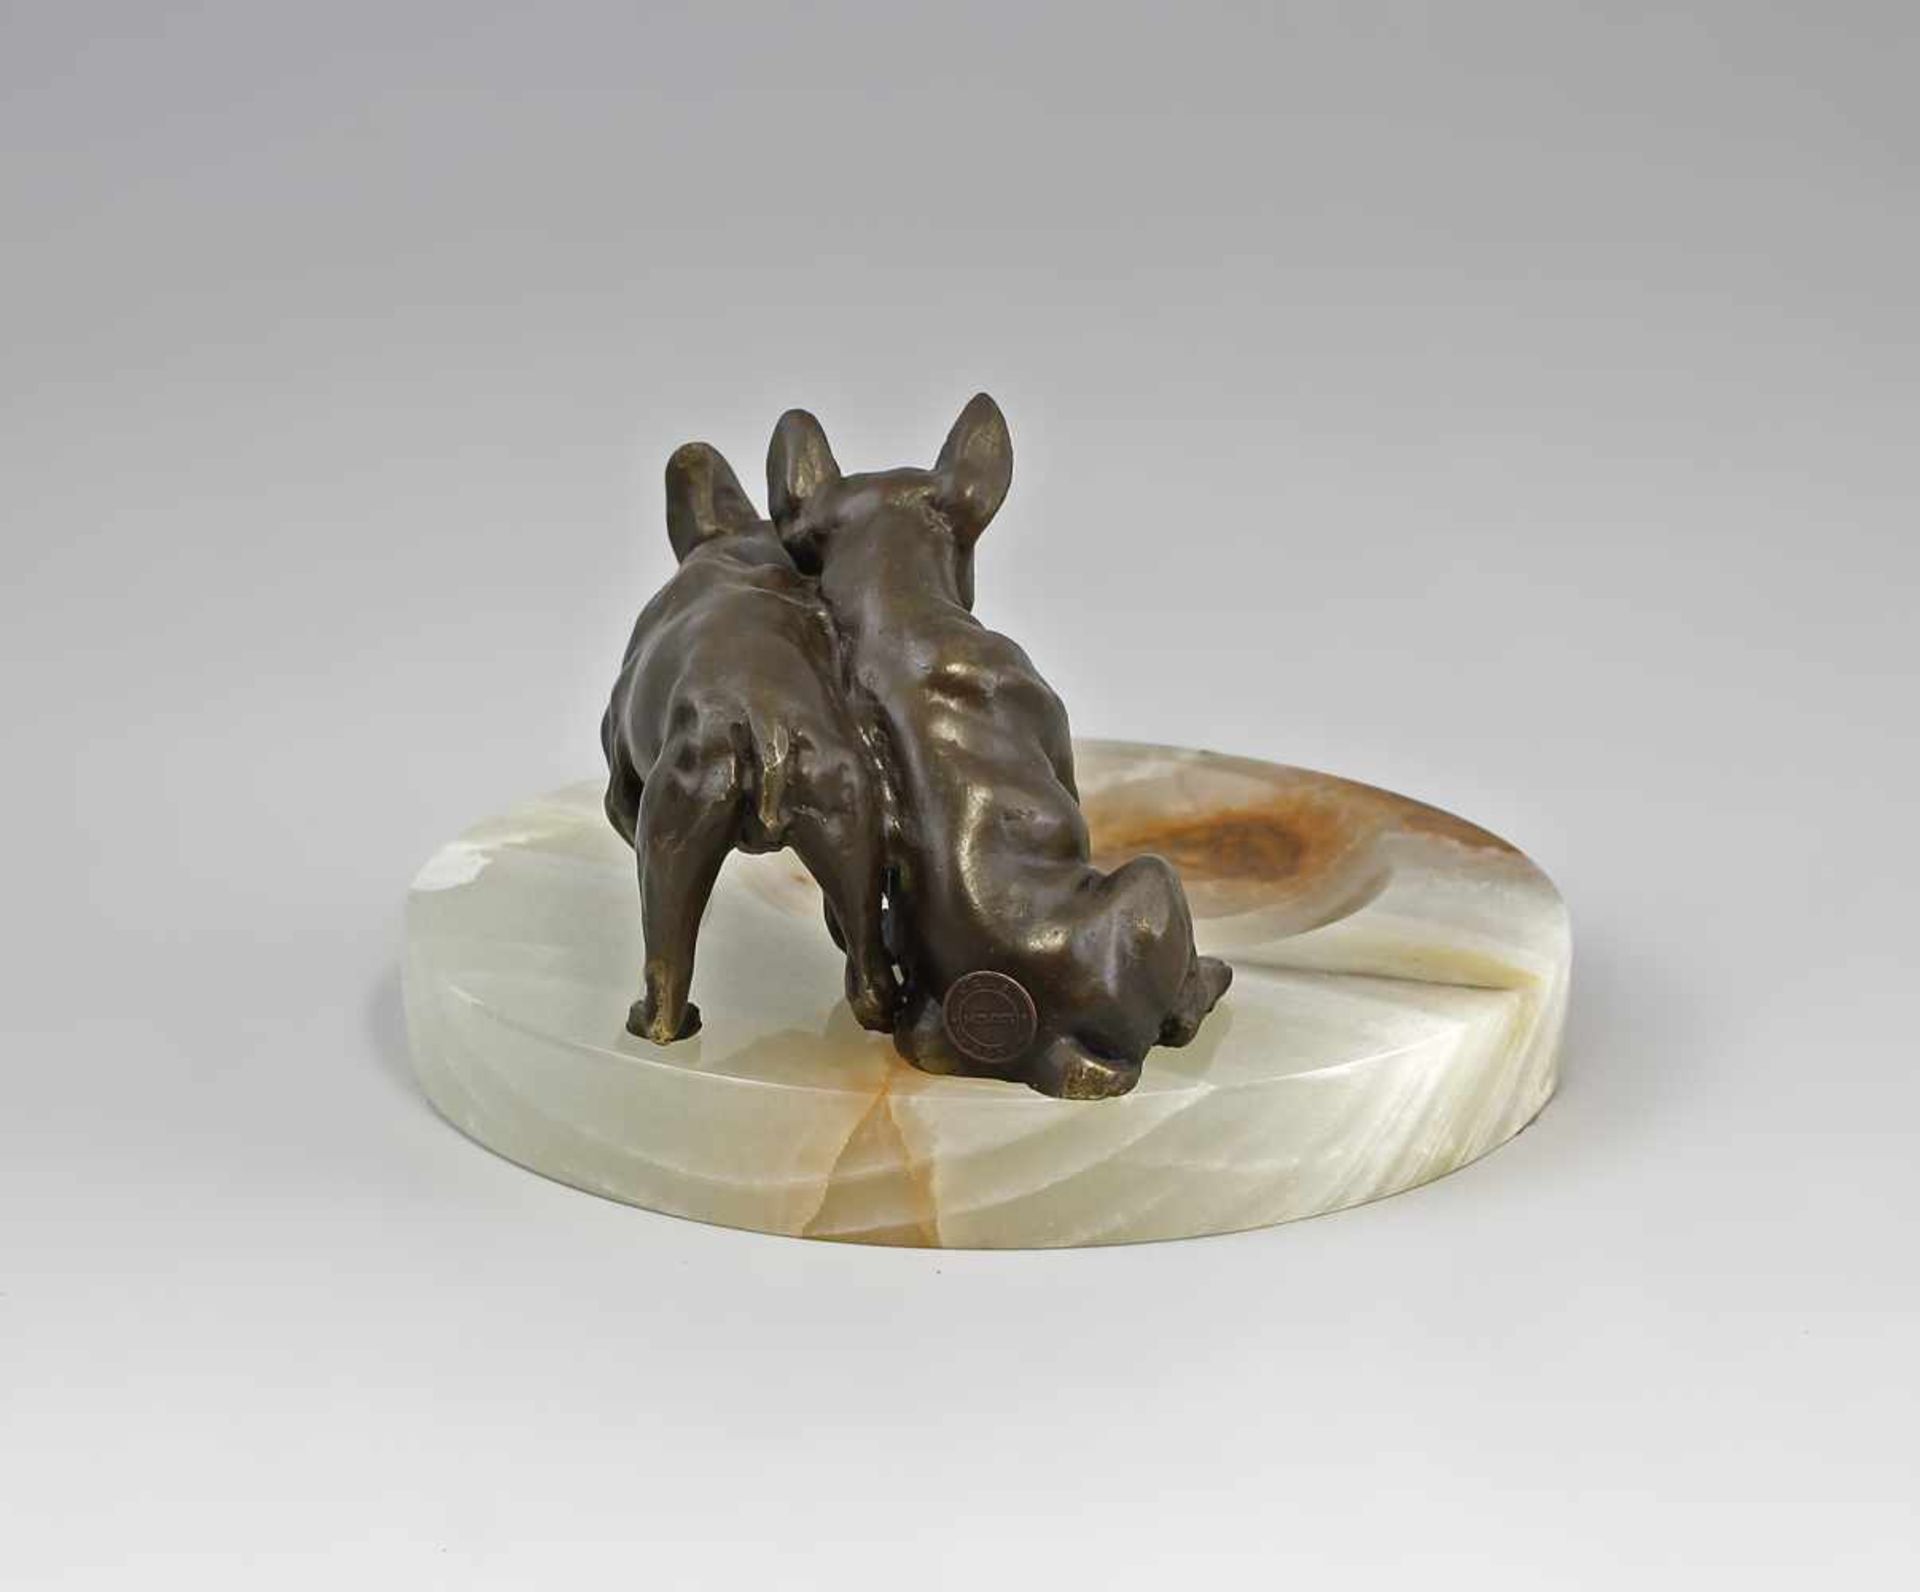 Onyx Schale mit französischen Bulldogen Bronze, naturgetreue Ausformung, auf Onyxschale montiert, - Bild 4 aus 4